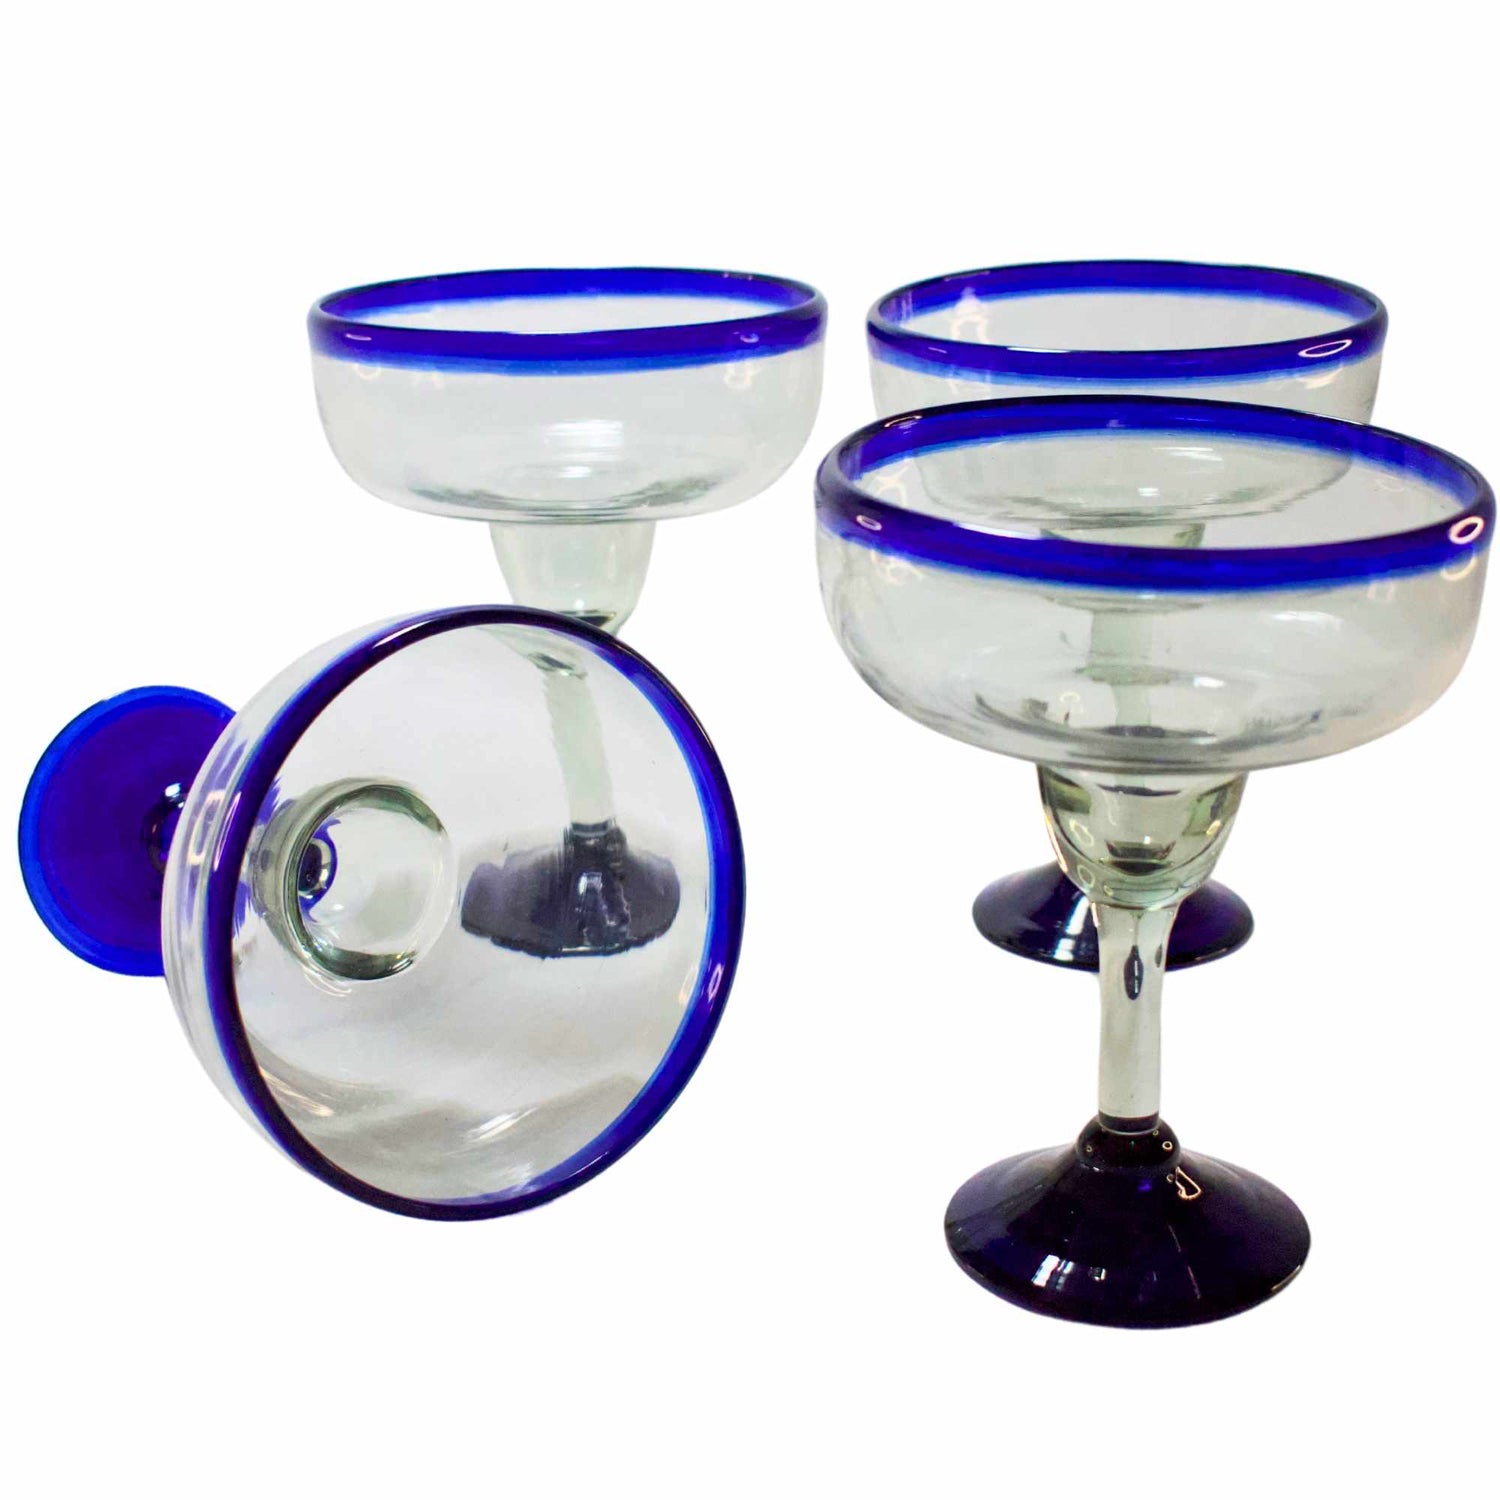 4 Copas margarita azul cobalto hecha de vidrio soplado en México